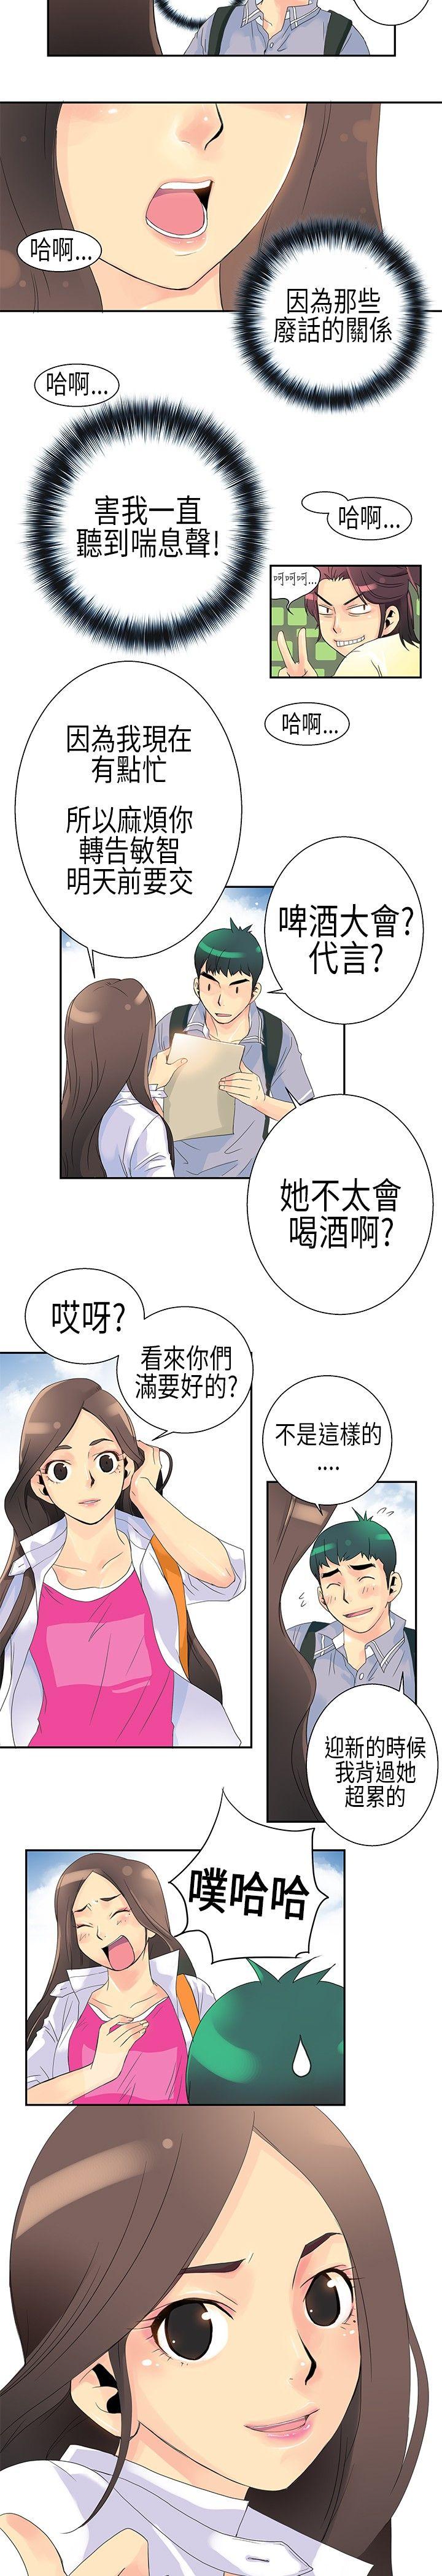 韩国污漫画 10人10色：初體驗 POPOTON-错觉的泥沼(上) 10